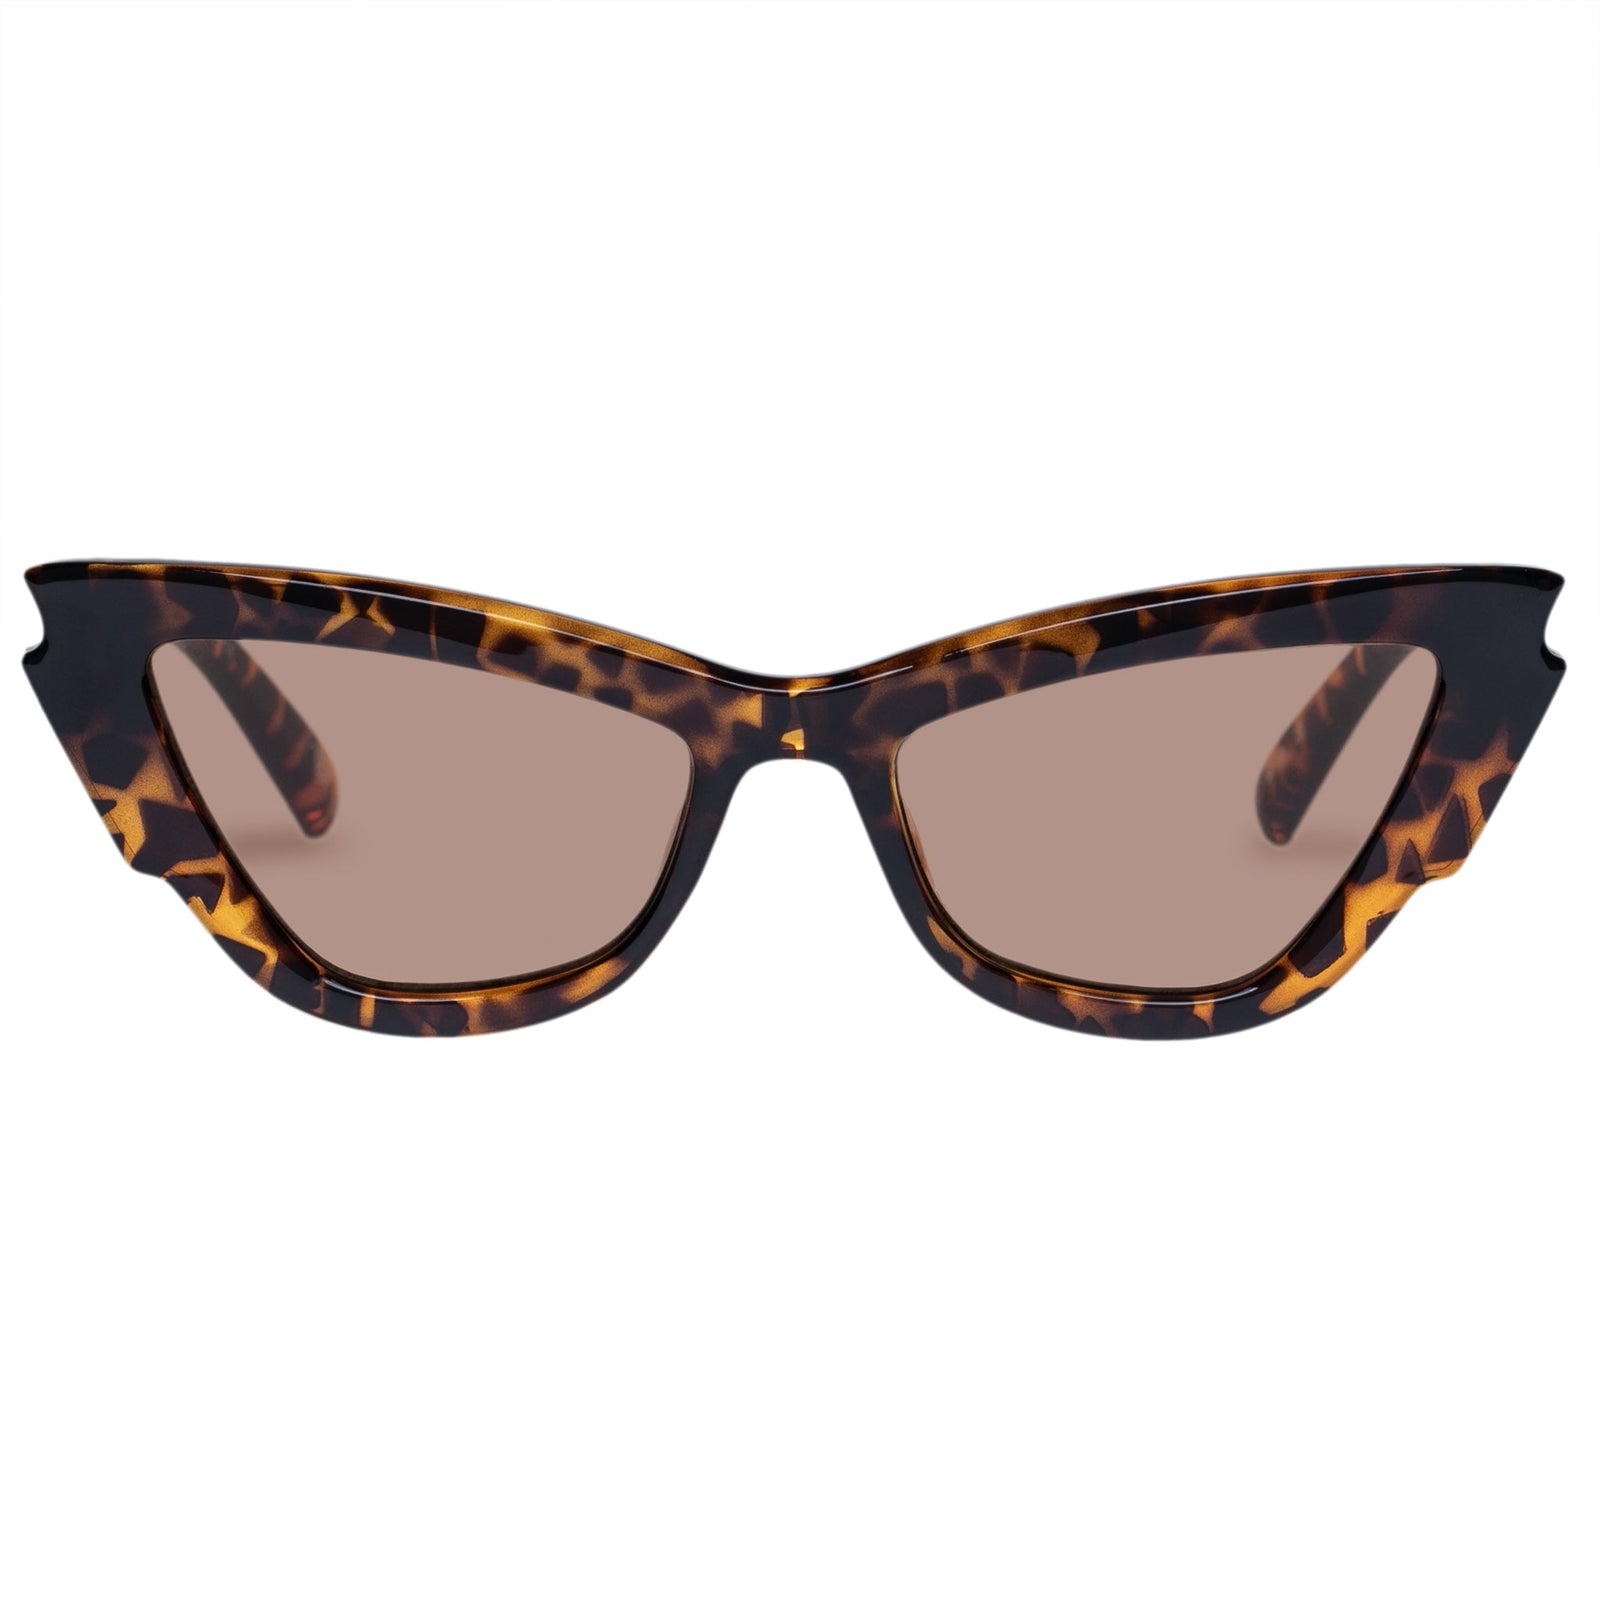 Lost Days Leopard Tort Women's Cat-Eye Glasses